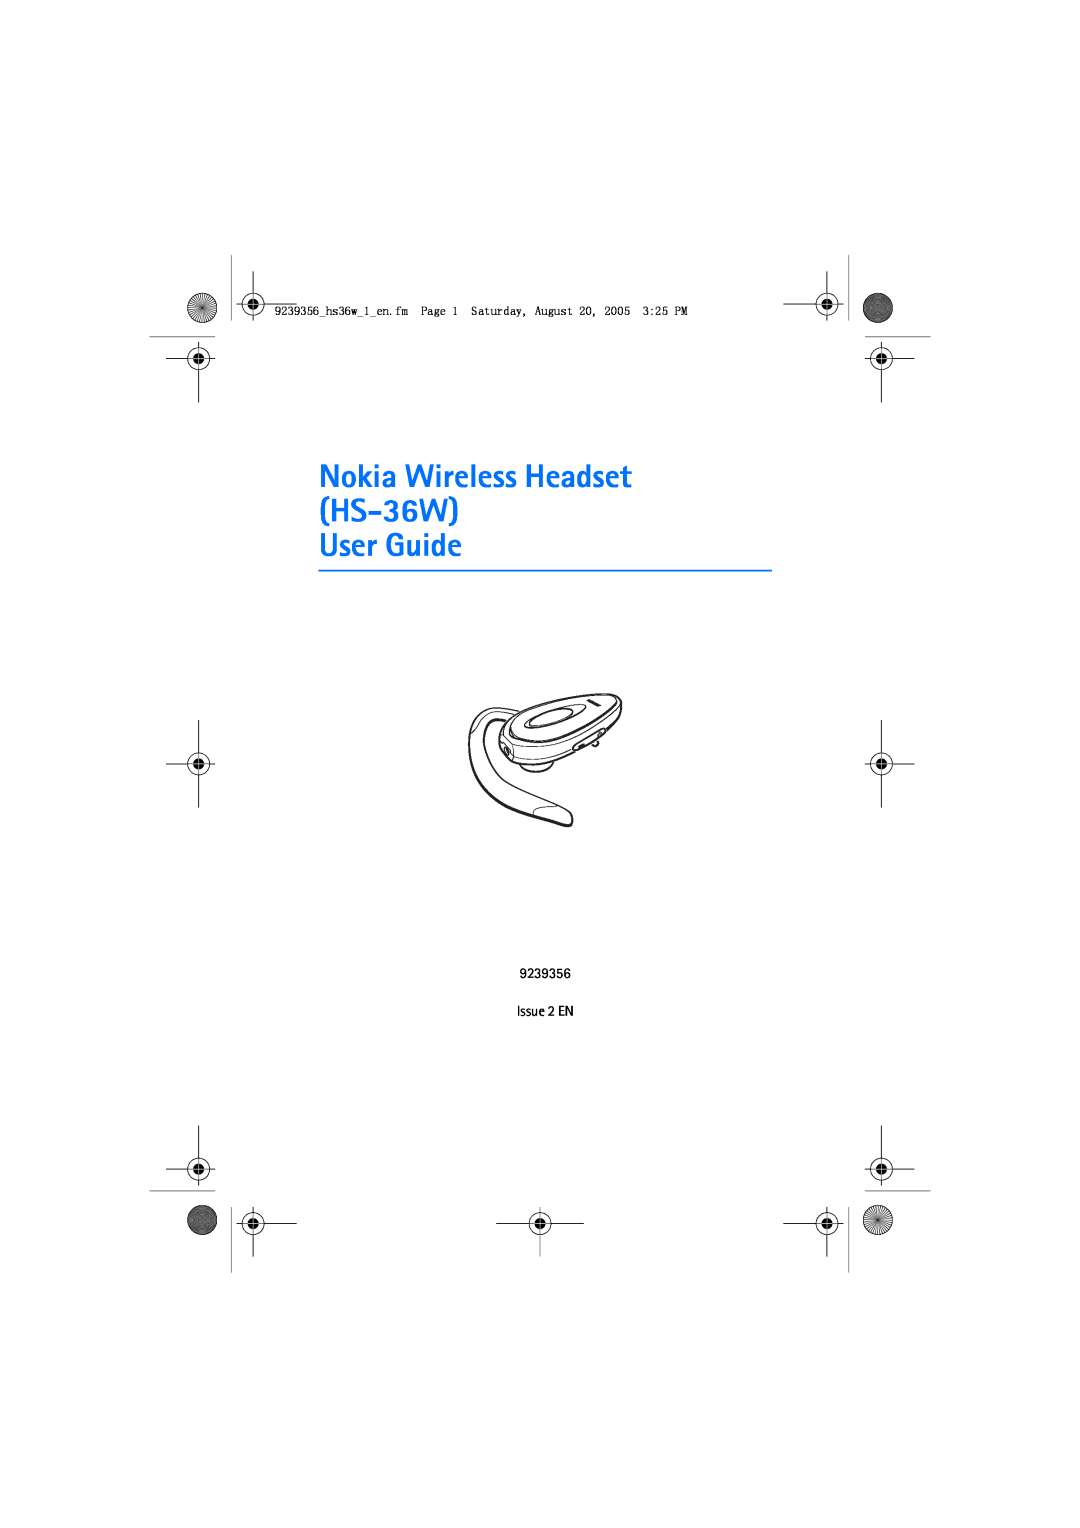 Nokia HS 36W manual Nokia Wireless Headset HS-36W User Guide, Issue 2 EN 